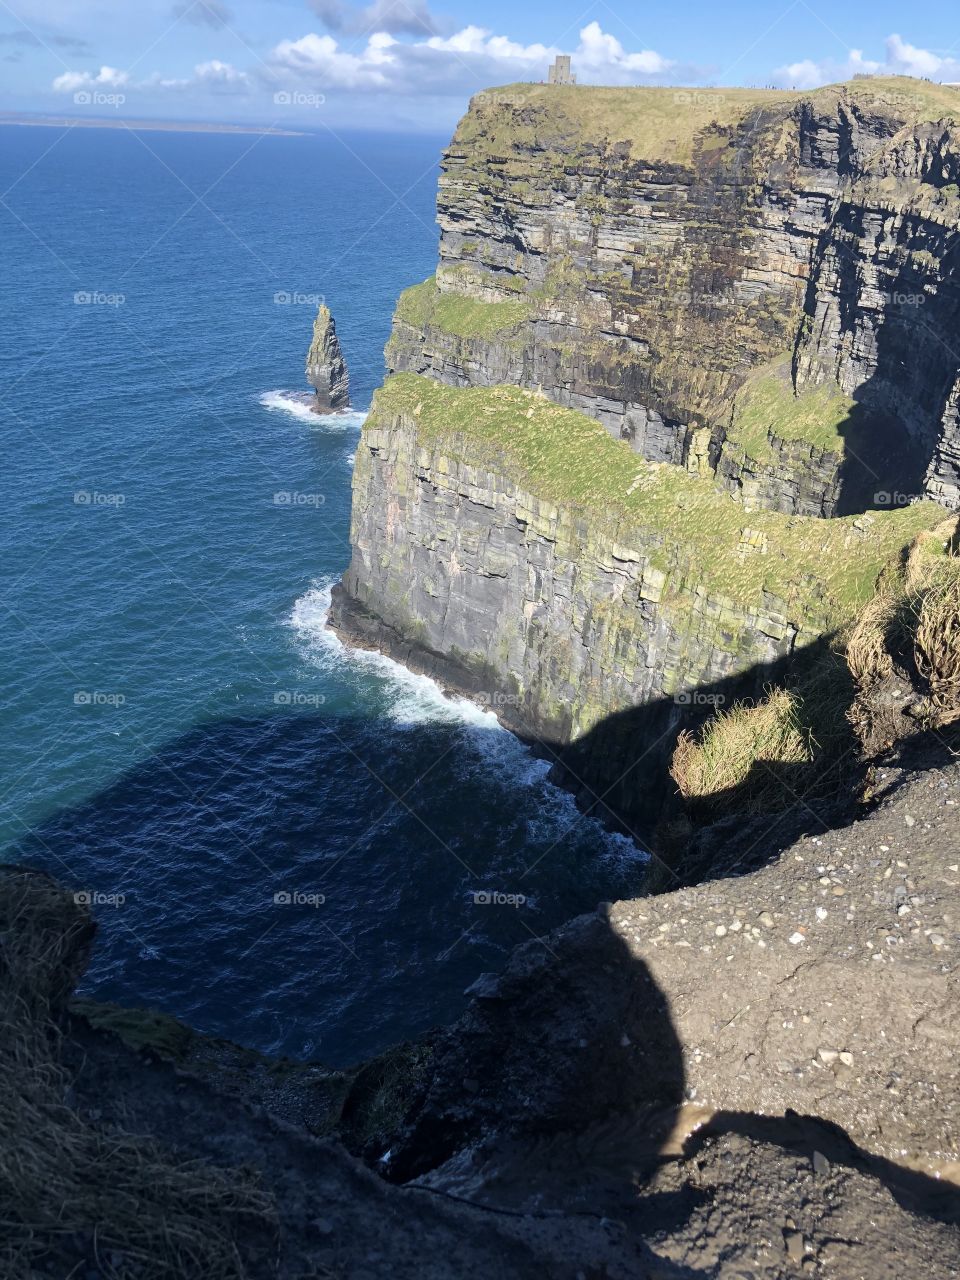 Cliffs of Mohr, Ireland